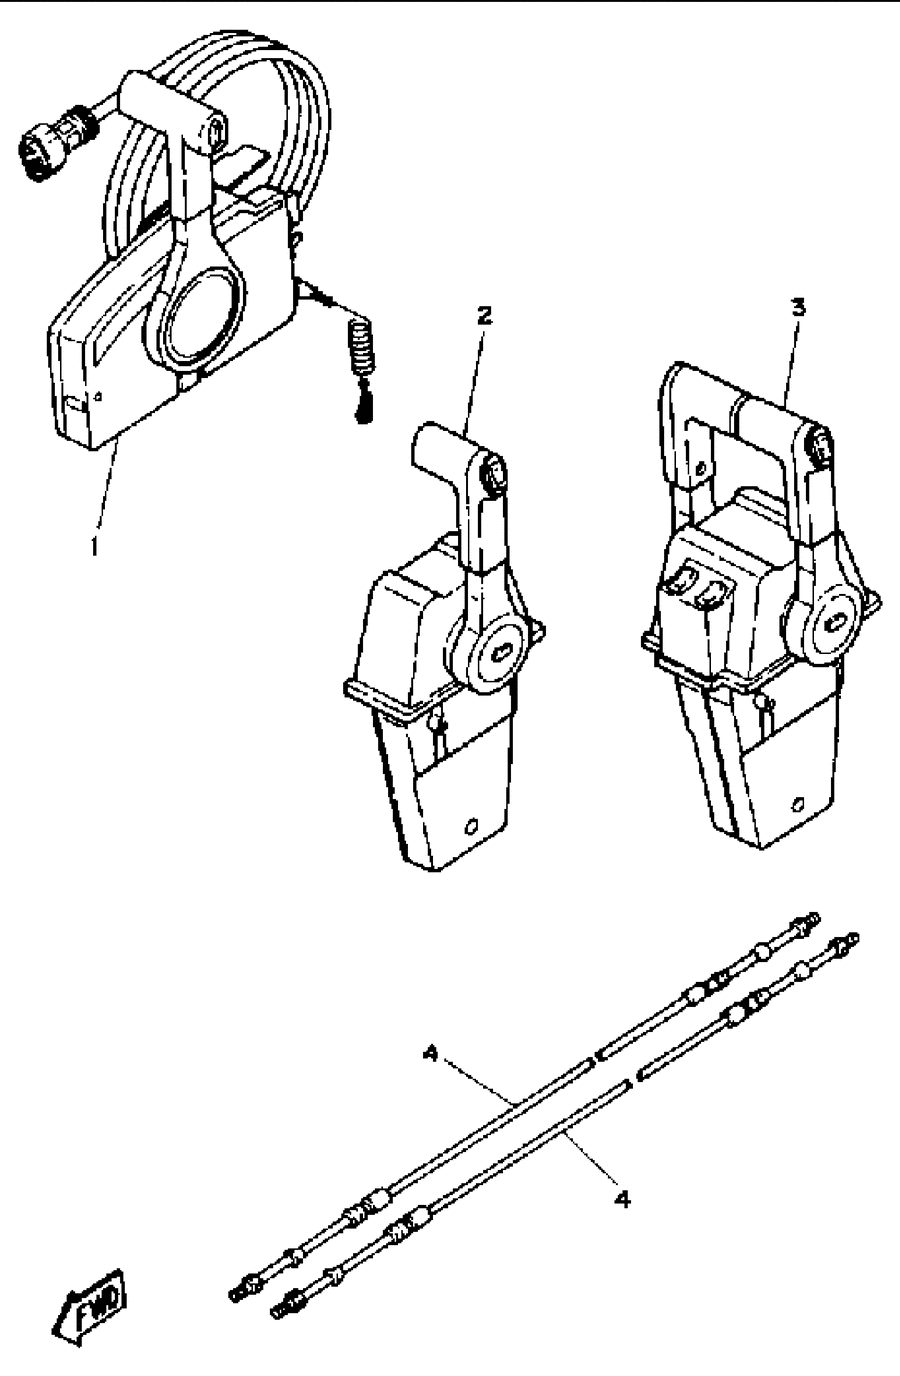 1990 L150ETXD REMOTE CONTROL CABLES